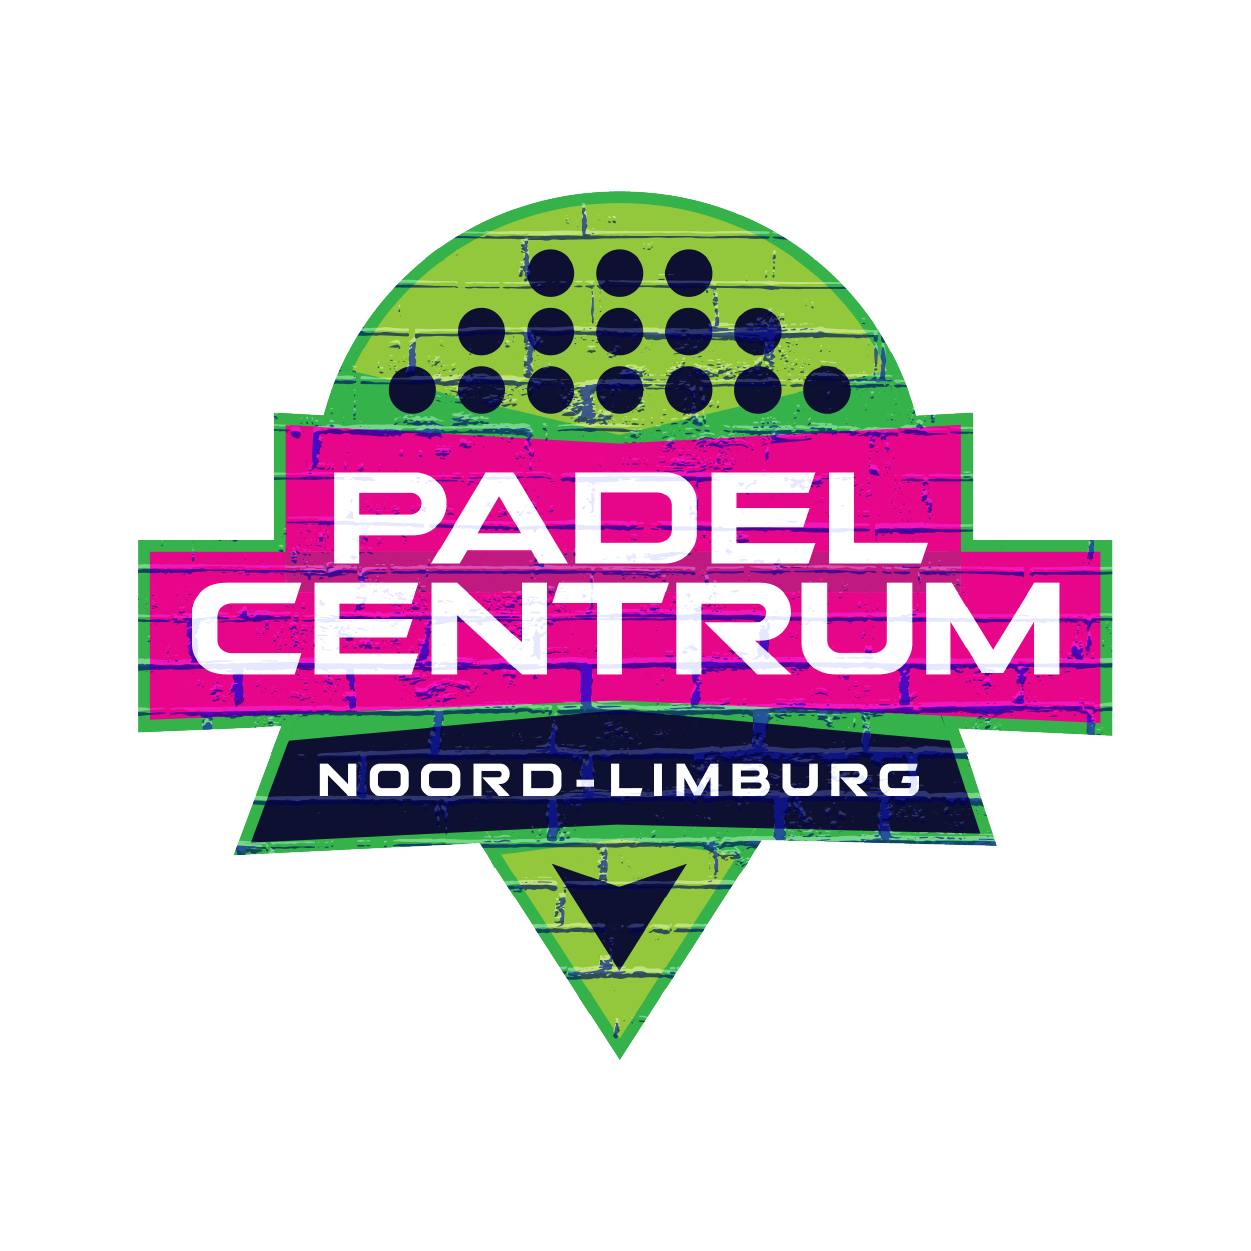 Profile image of venue Padel Centrum Noord-Limburg